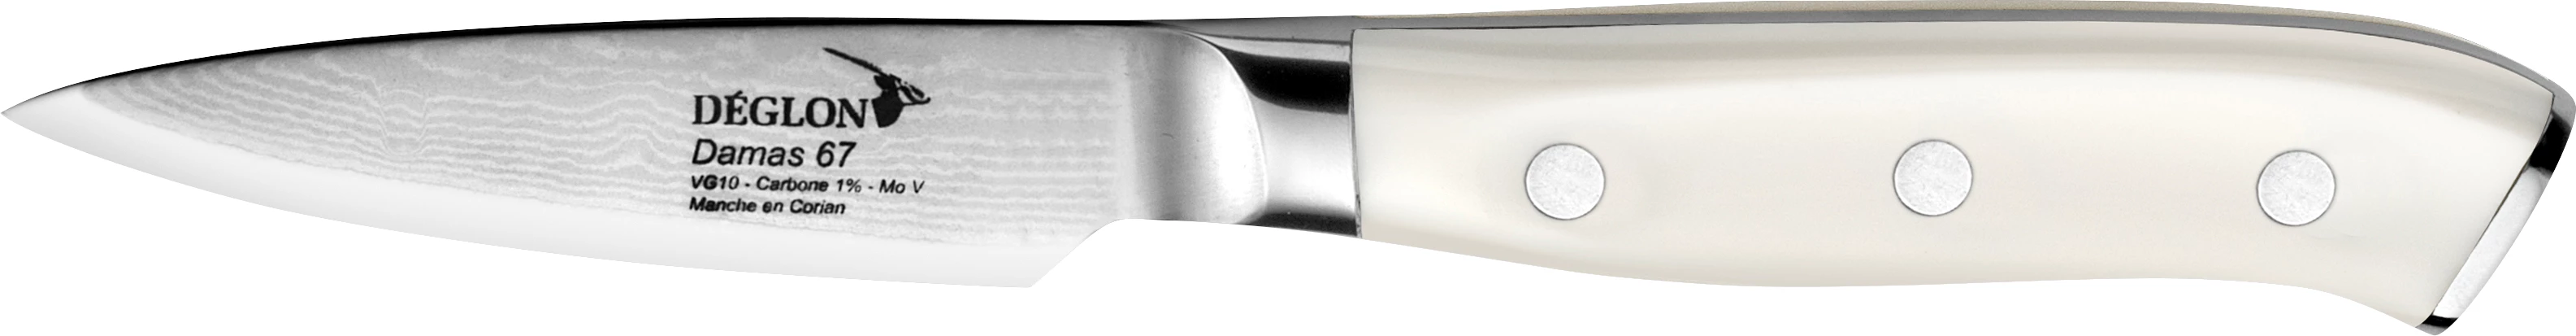 Deglon DAMAS urtekniv med hvidt skaft, 9 cm